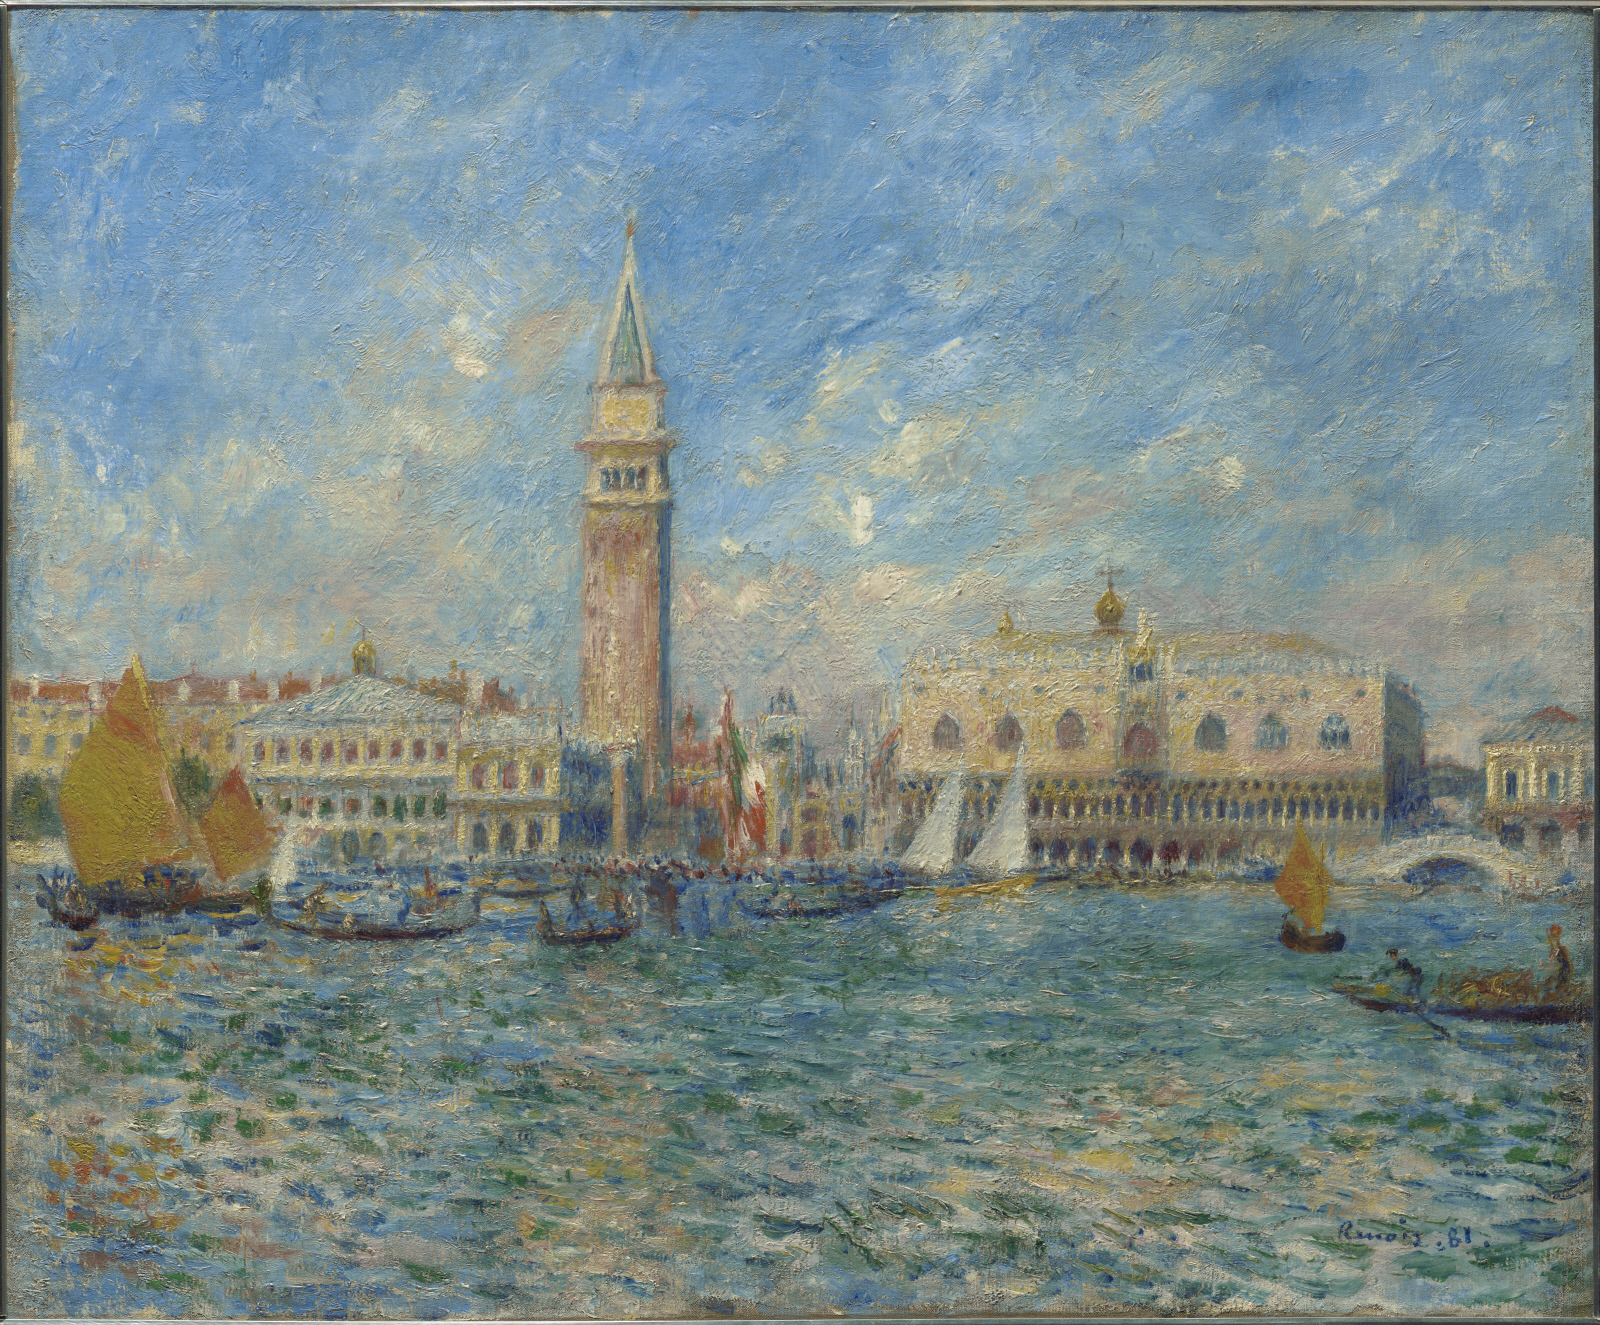 Venise, le Palais des Doges by Pierre-Auguste Renoir - 1881 - 54.5 x 65.7 cm The Clark